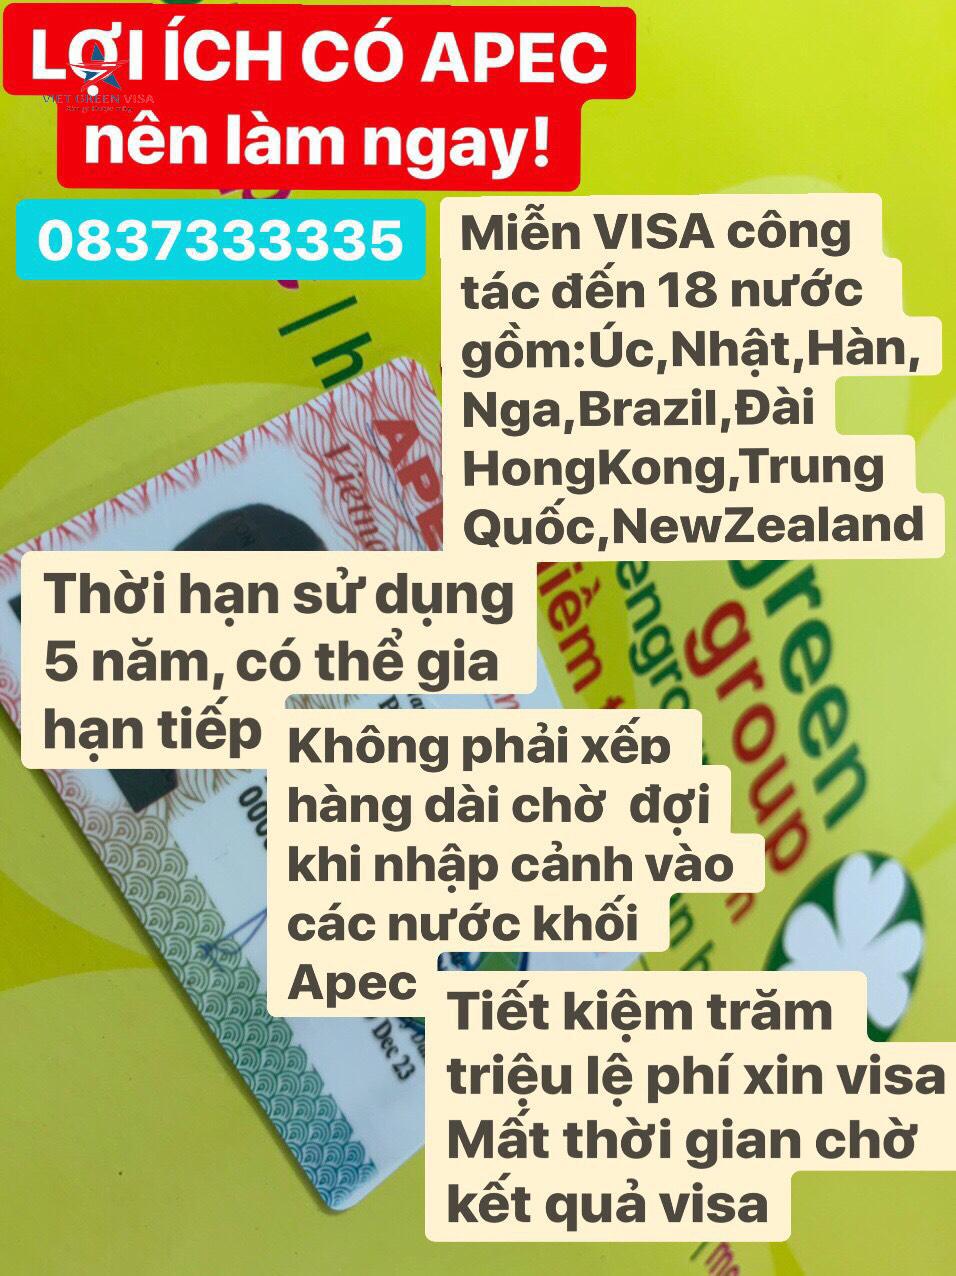 Dịch vụ làm thẻ Apec tại Lào Cai, tư vấn thẻ Apec, thẻ apec, Lào Cai, Viet Green Visa